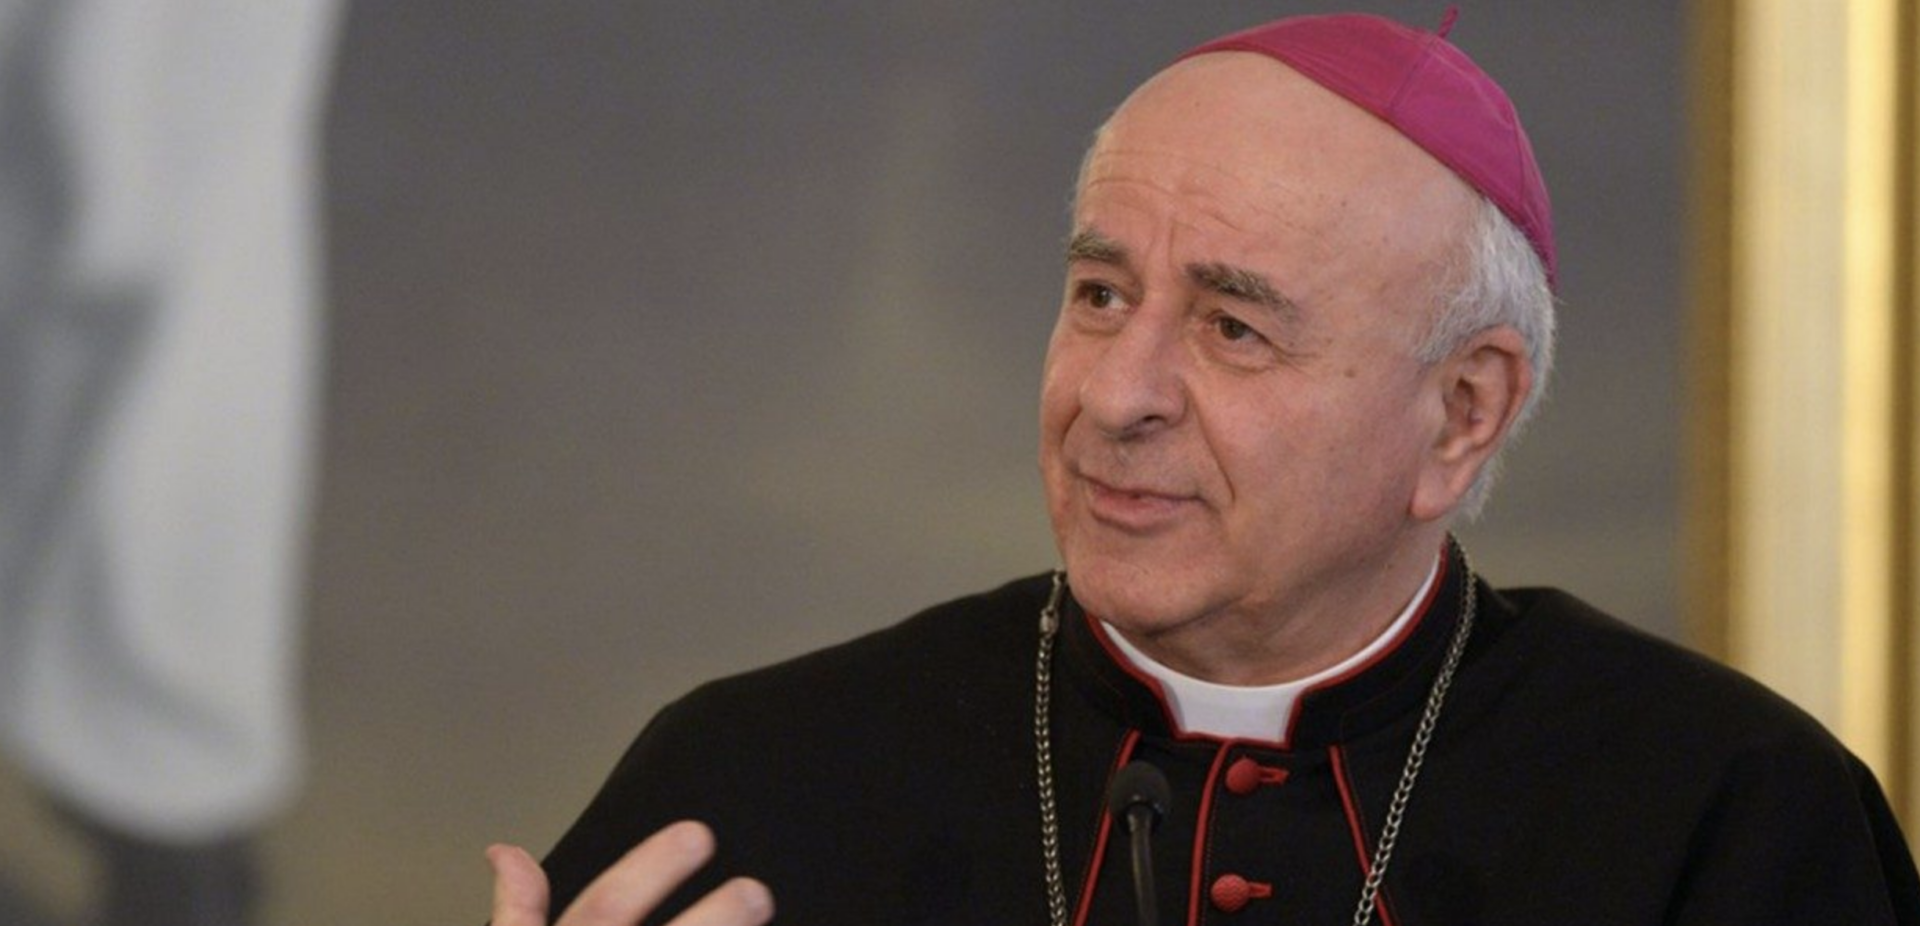 Mgr Vincenzo Paglia est président de l'Académie pontificale pour la vie depuis 2016 | © Vatican Media